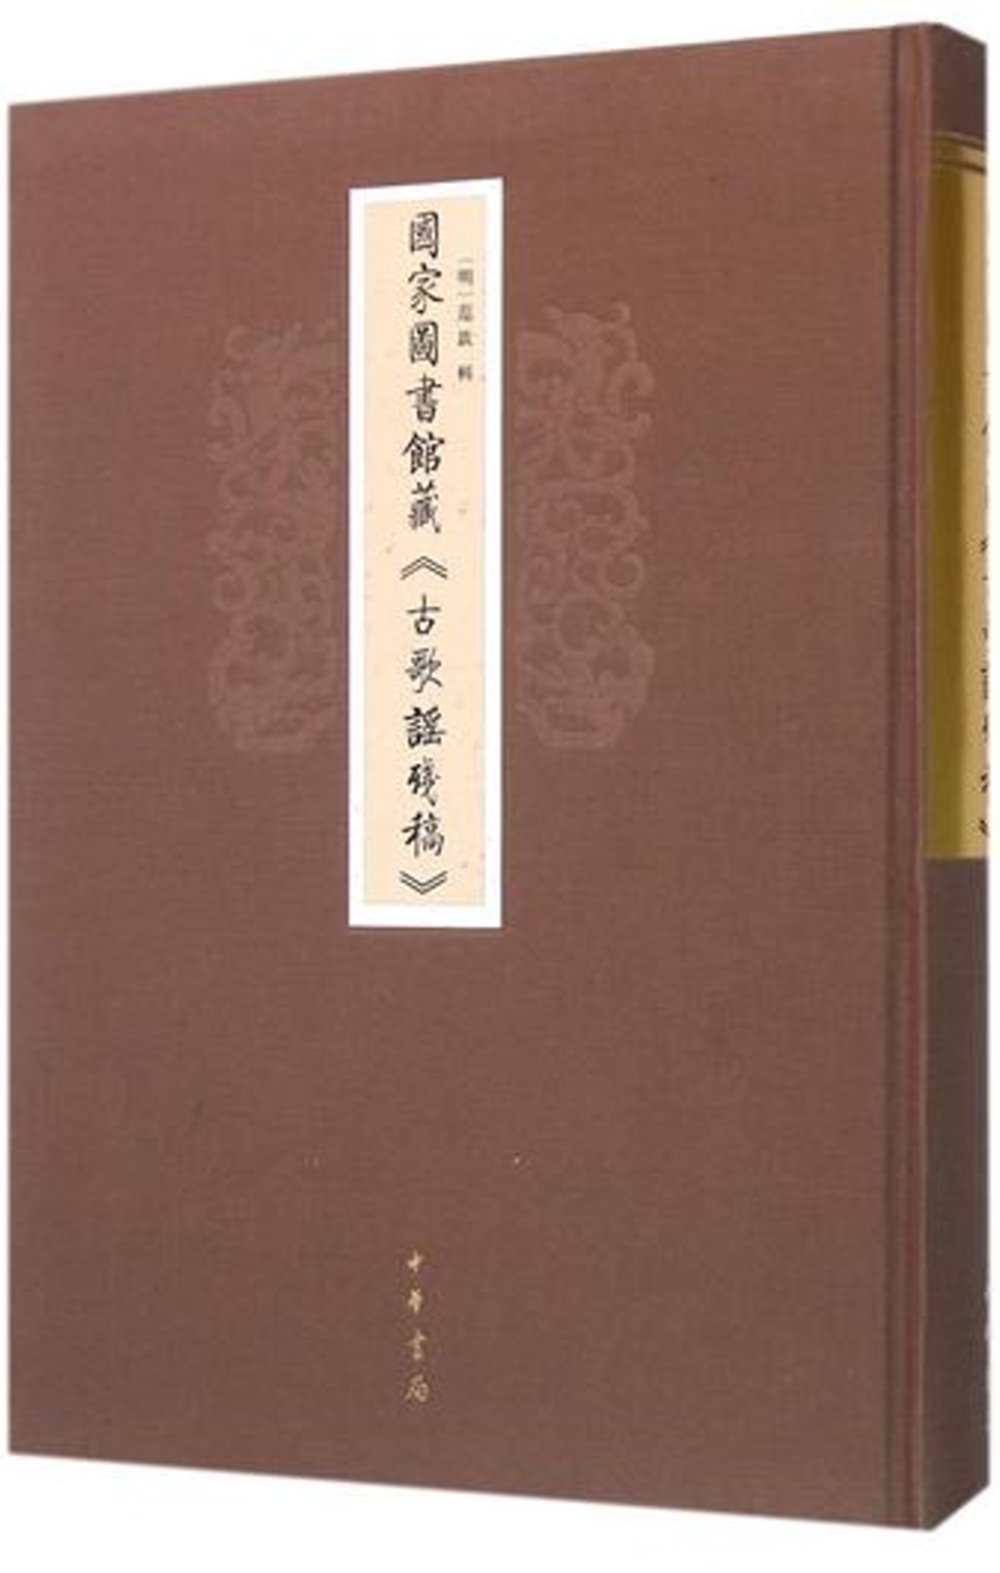 國家圖書館藏《古歌謠殘稿》